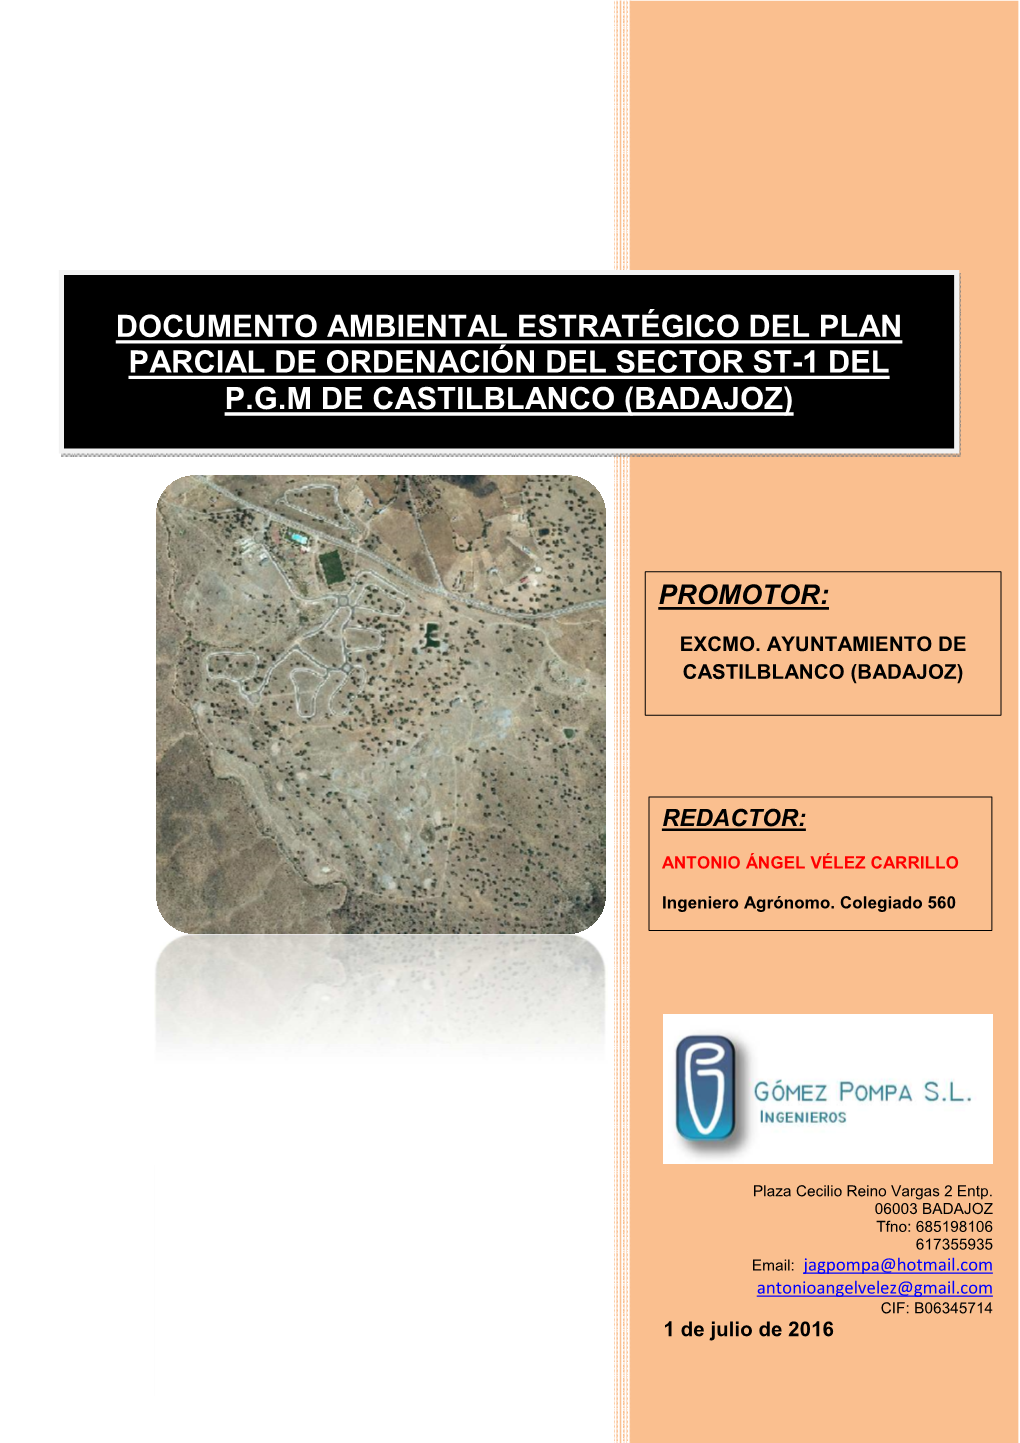 Documento Ambiental Estratégico Del Plan Parcial De Ordenación Del Sector St-1 Del P.G.M De Castilblanco (Badajoz)